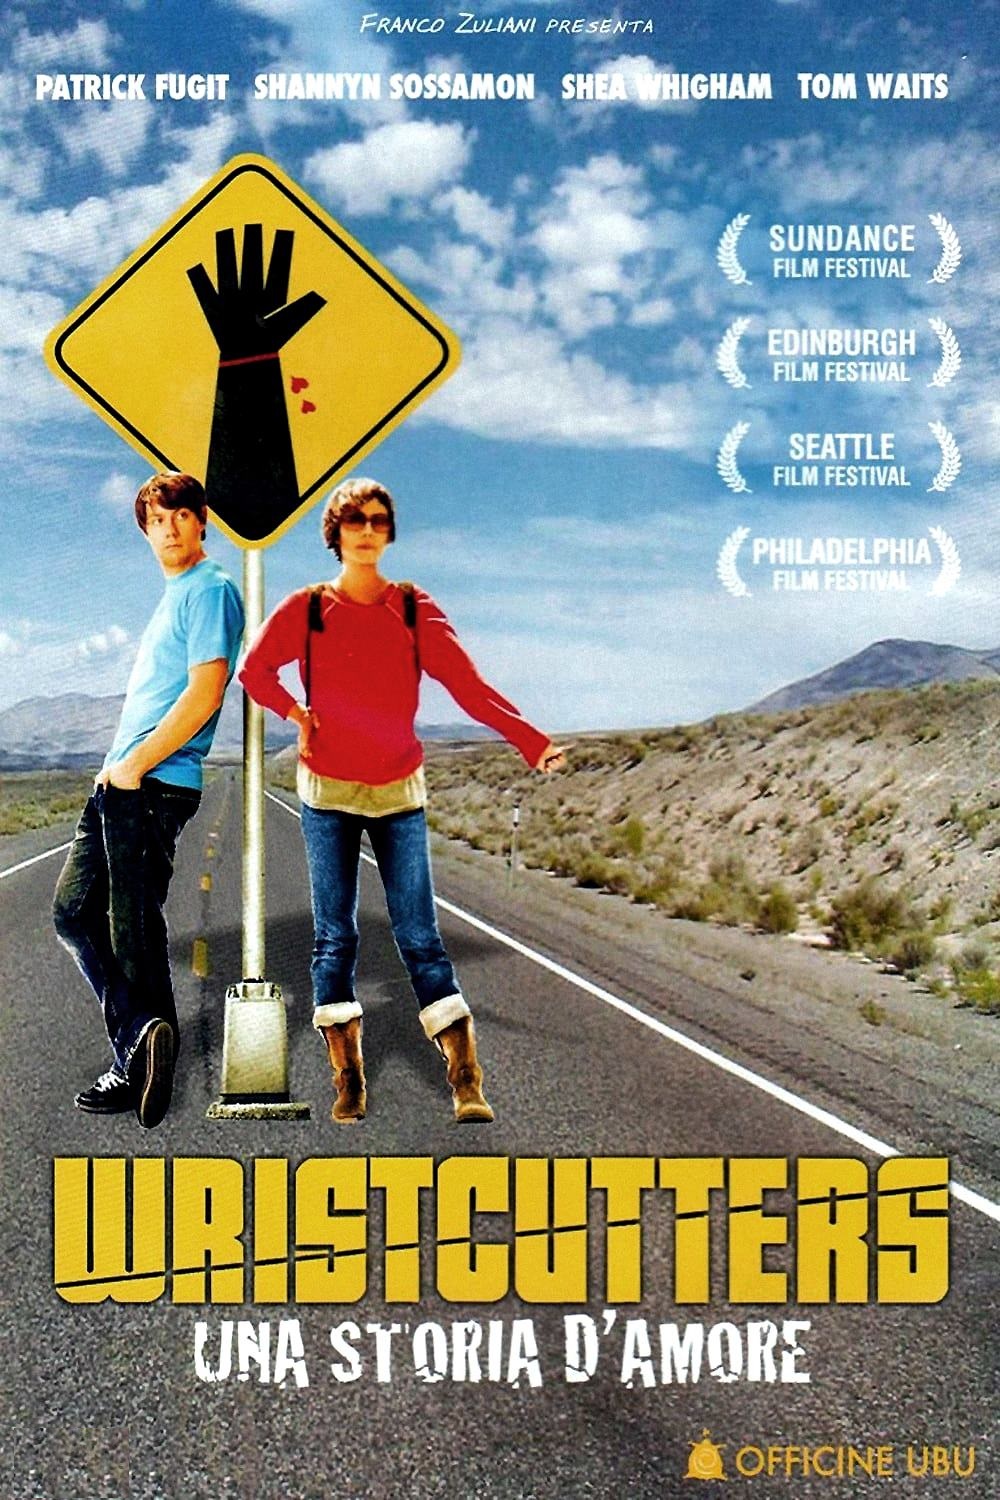 Wristcutters – Una storia d’amore [HD] (2007)